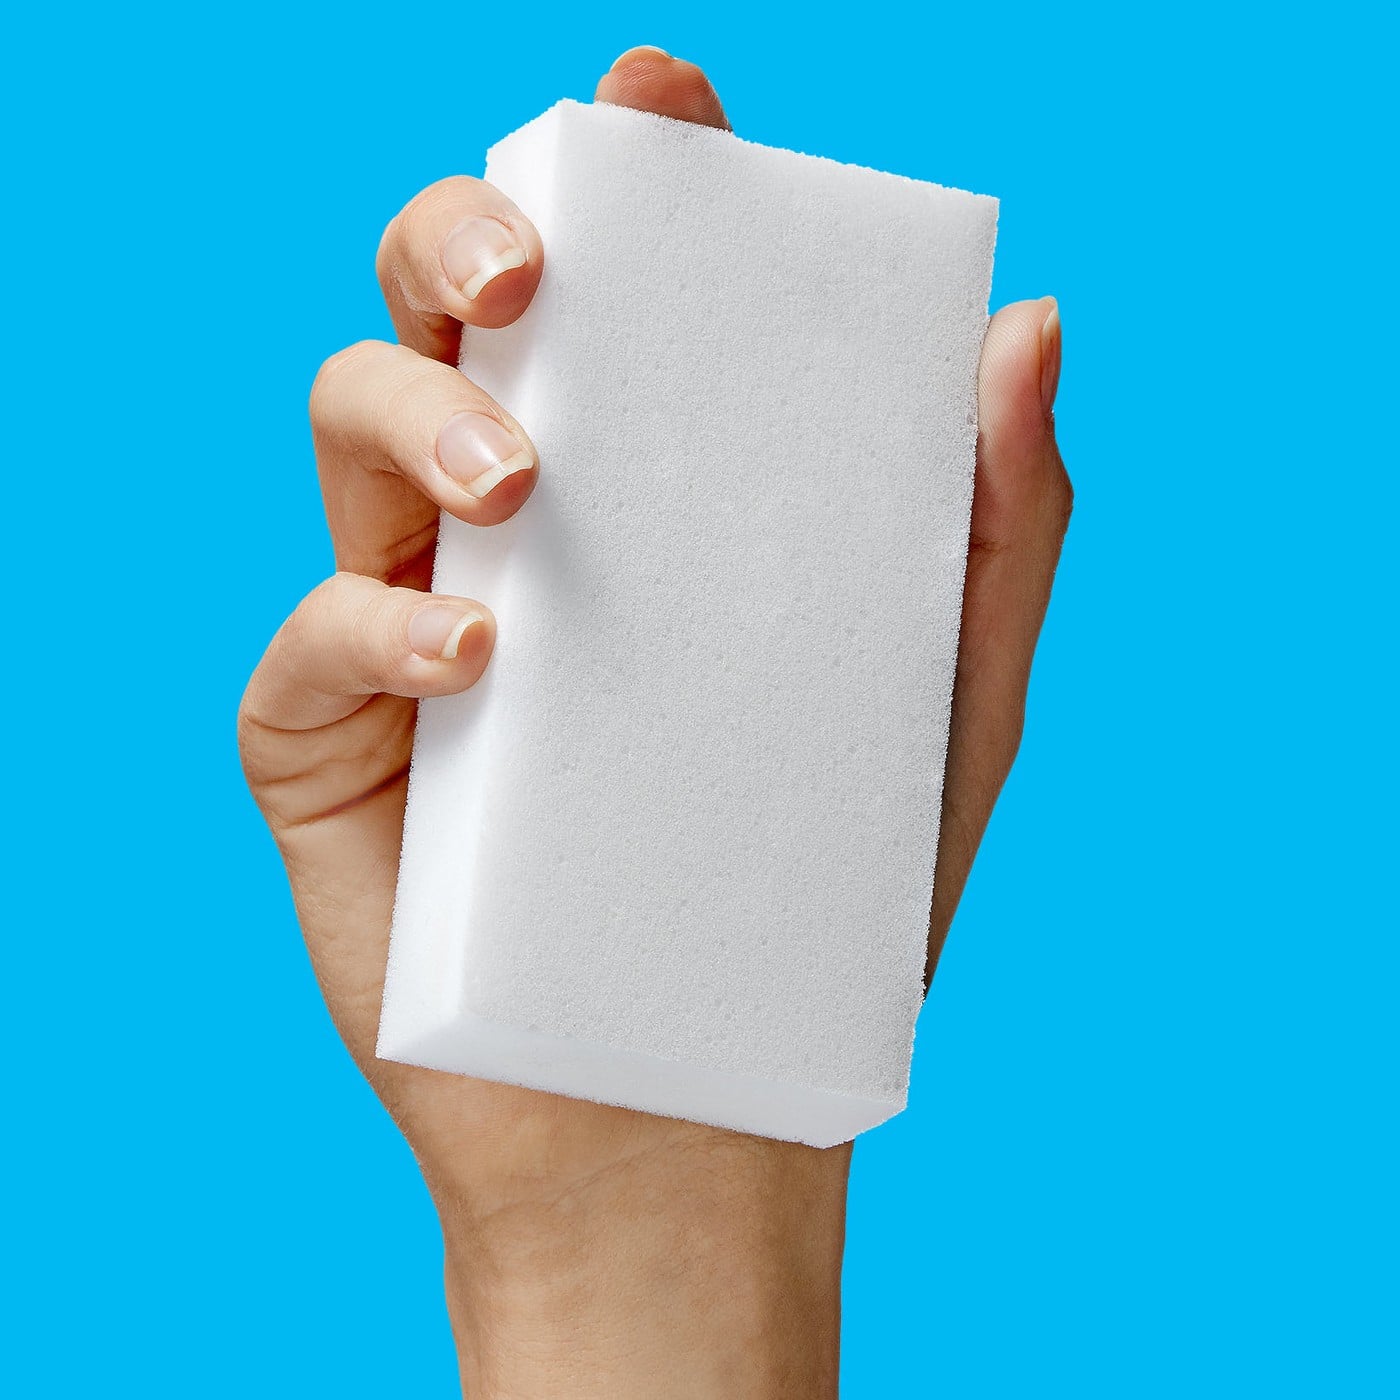 Chất liệu Magic Eraser: Magic Eraser được làm từ chất liệu đặc biệt giúp tẩy rửa nhanh chóng và dễ dàng các vết bẩn. Nếu bạn muốn biết thêm về chất liệu này, hãy xem hình ảnh trong bài viết này để khám phá công nghệ làm sạch tiên tiến nhất hiện nay.